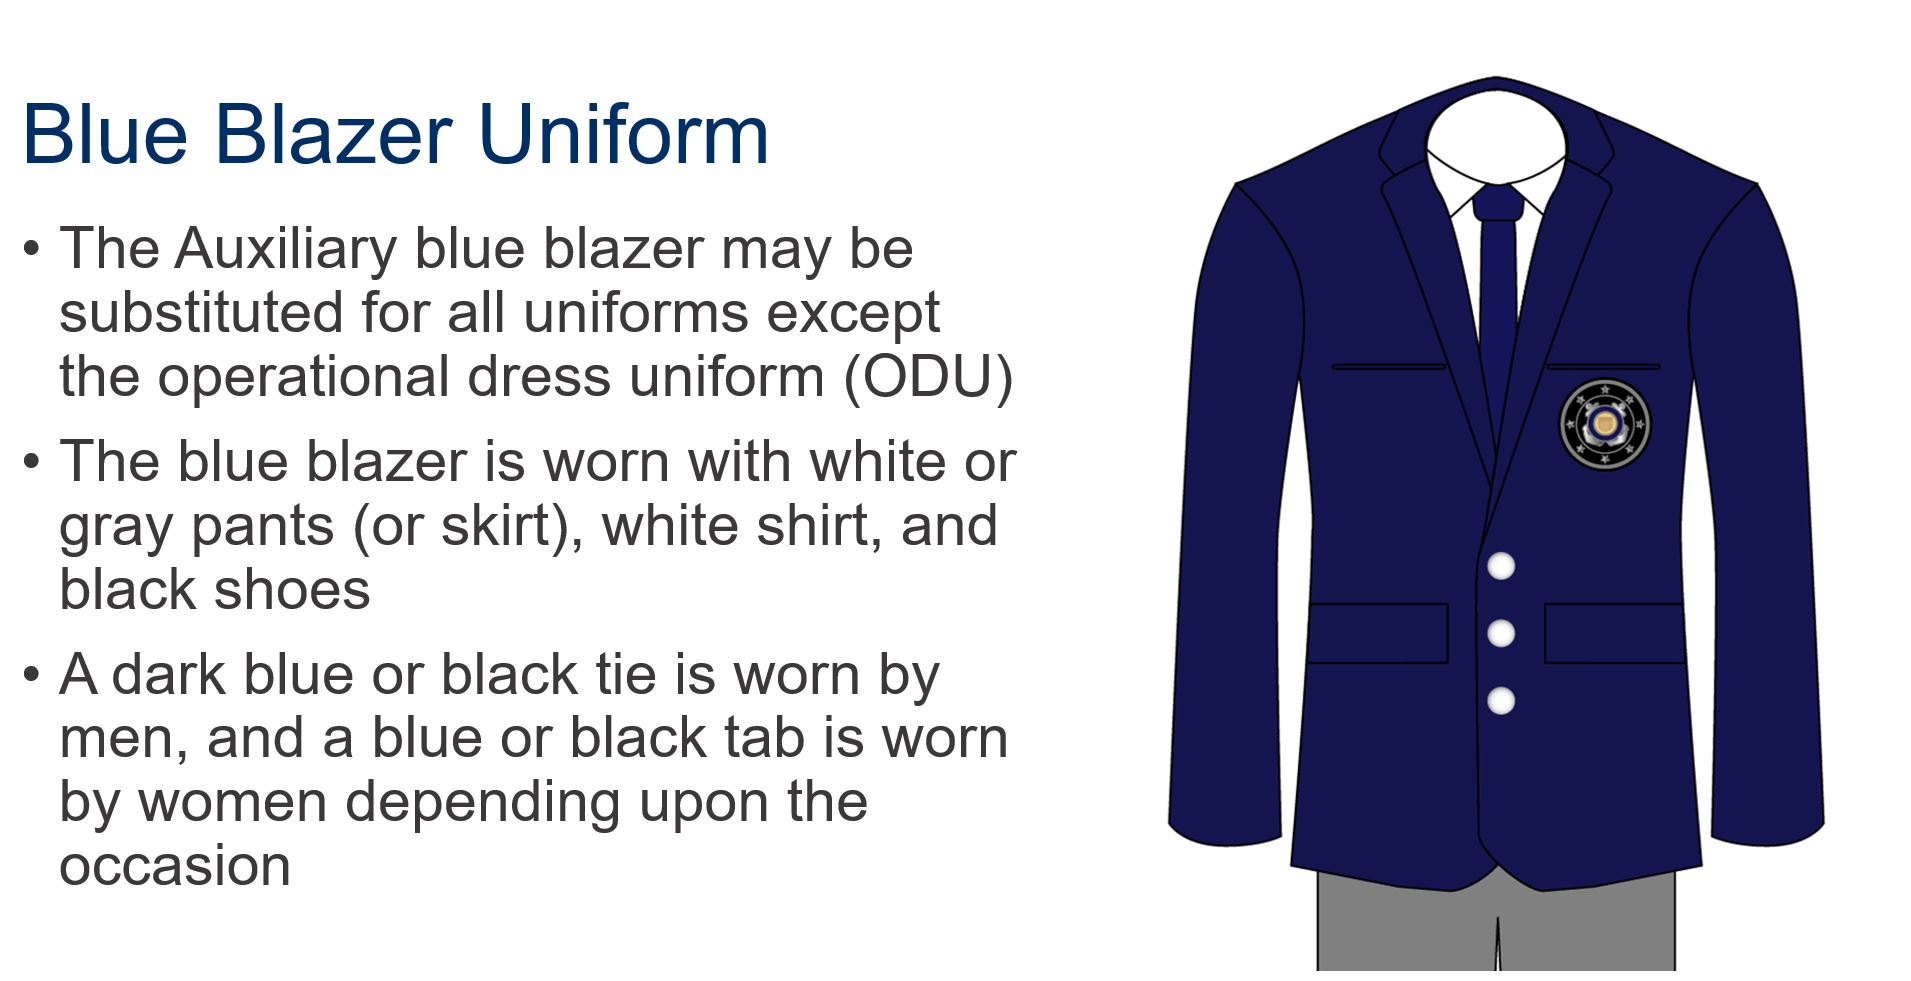 wear of uniform